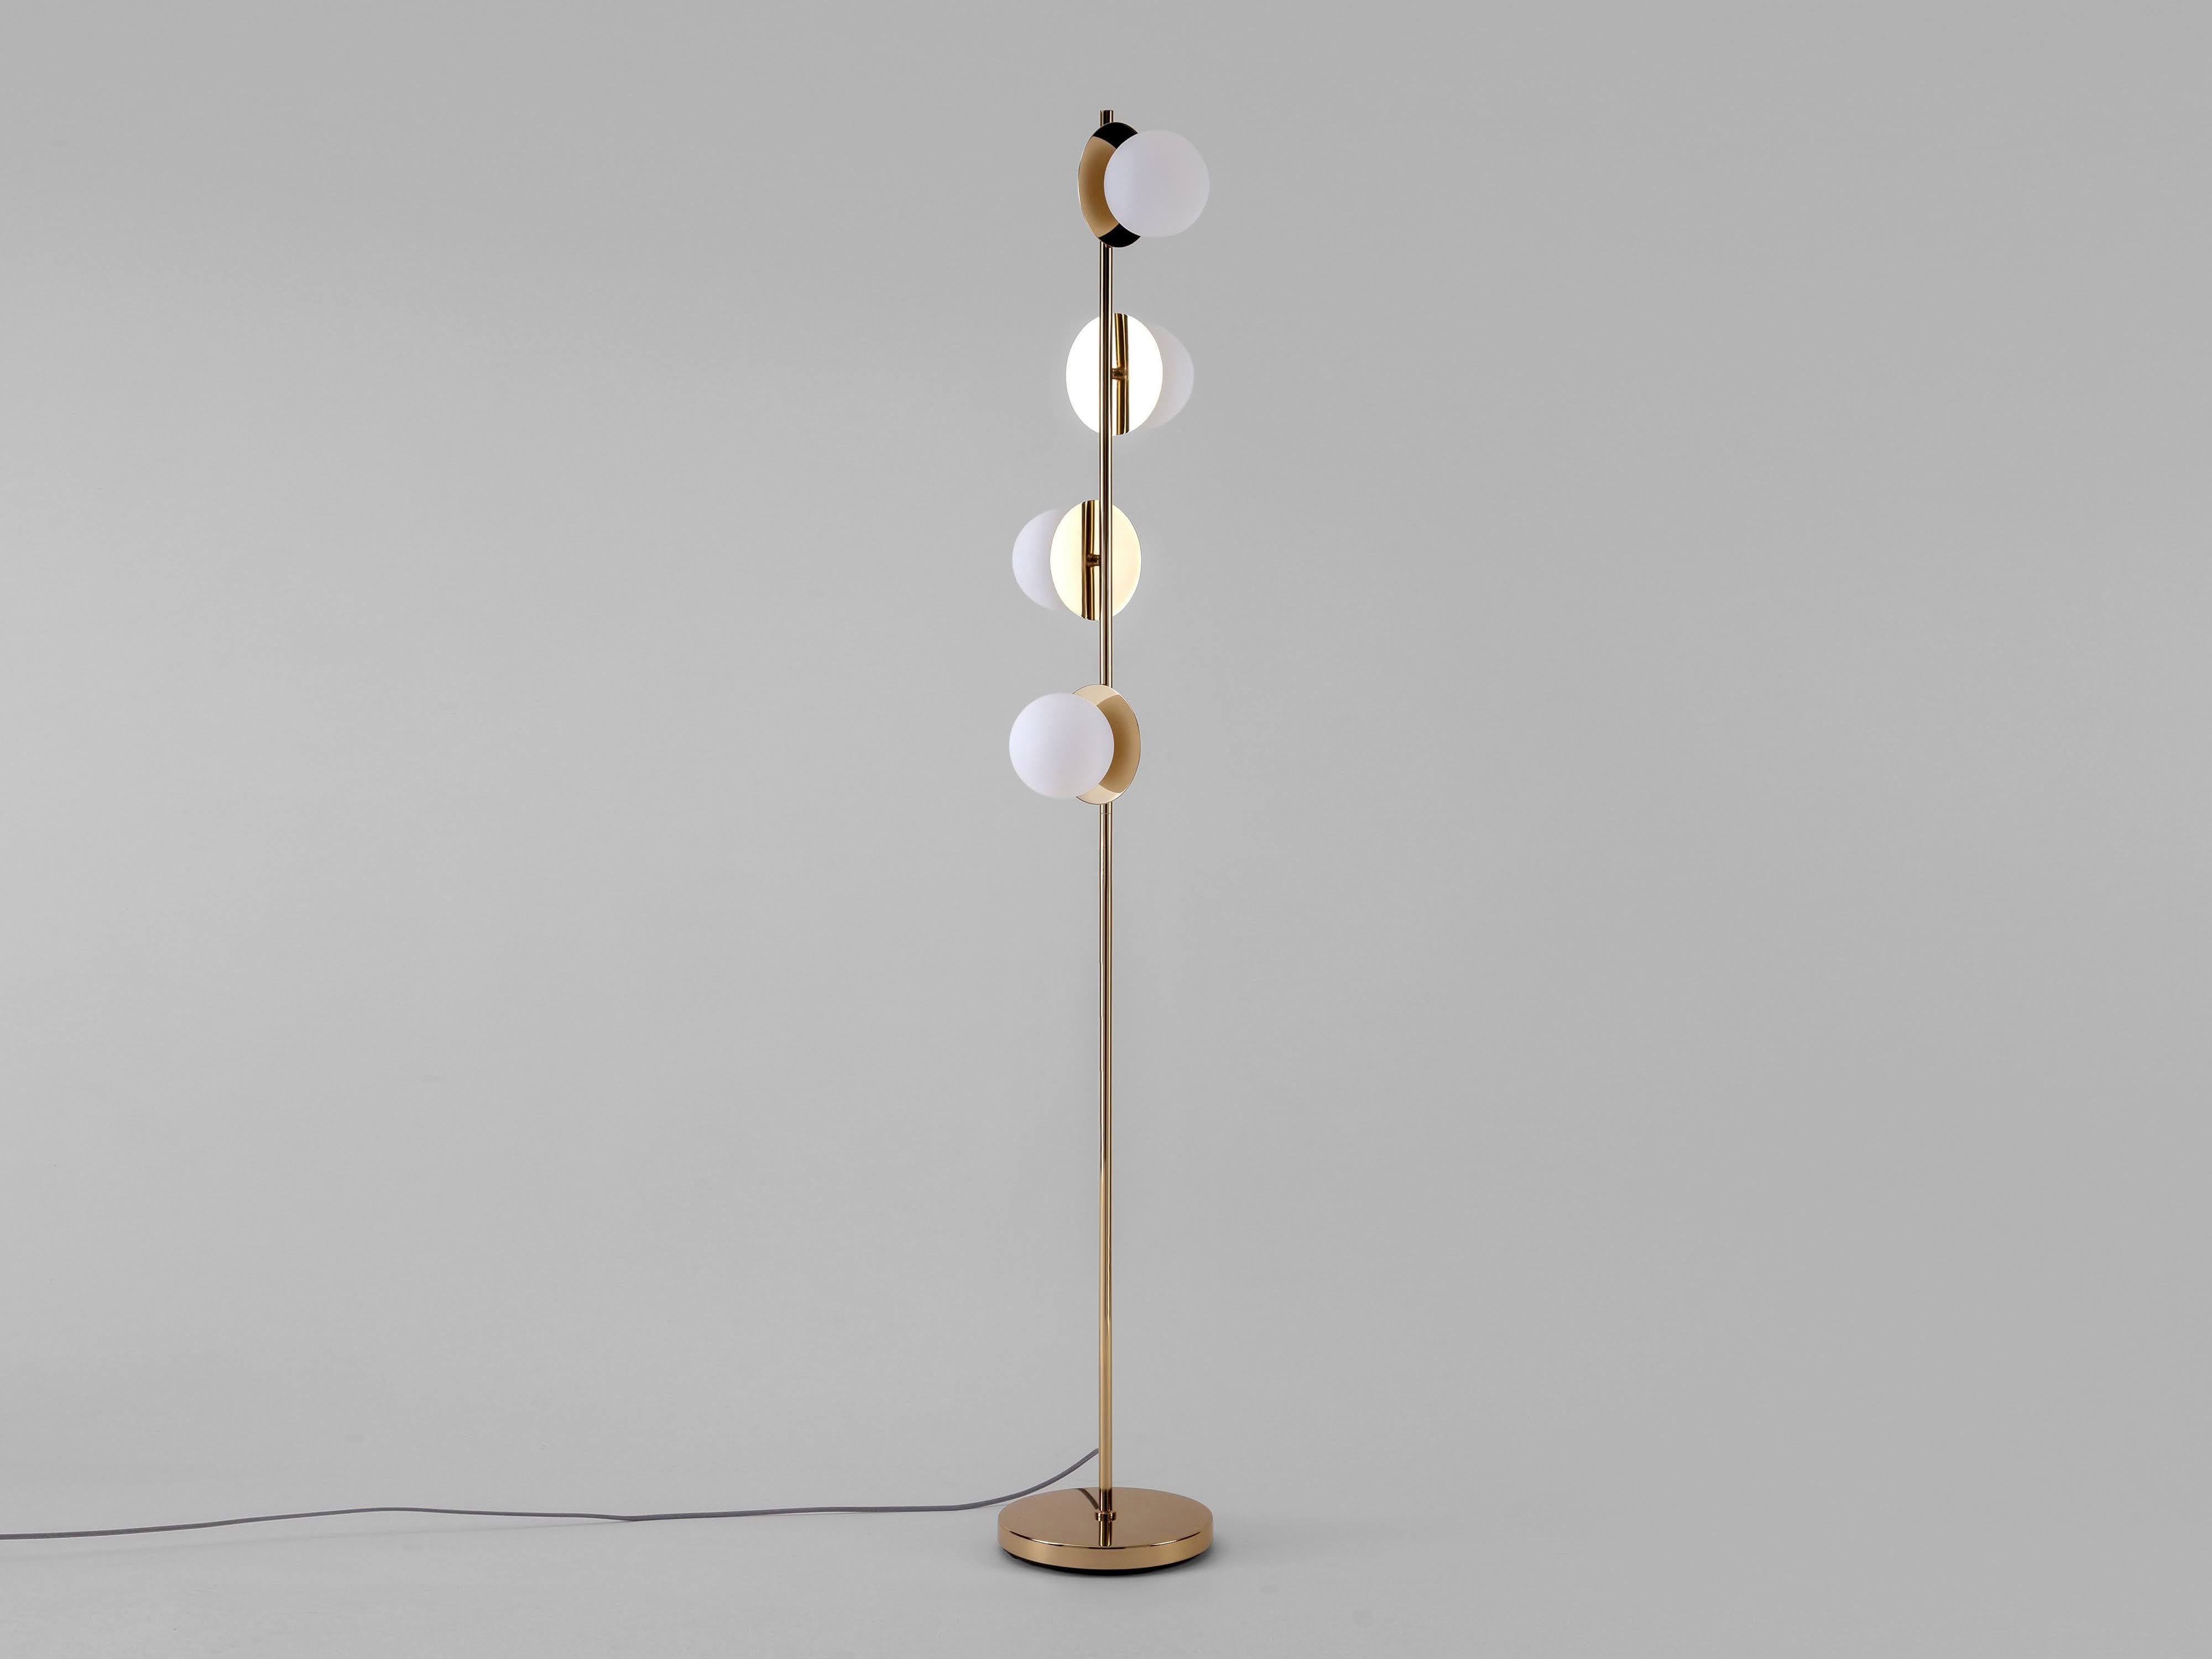 Un lampadaire contemporain pour transformer votre espace. Des formes sculpturales et une lumière douce s'associent pour créer ce magnifique et élégant lampadaire sur pied en laiton. Quatre abat-jour opalins reposent sur des disques de laiton